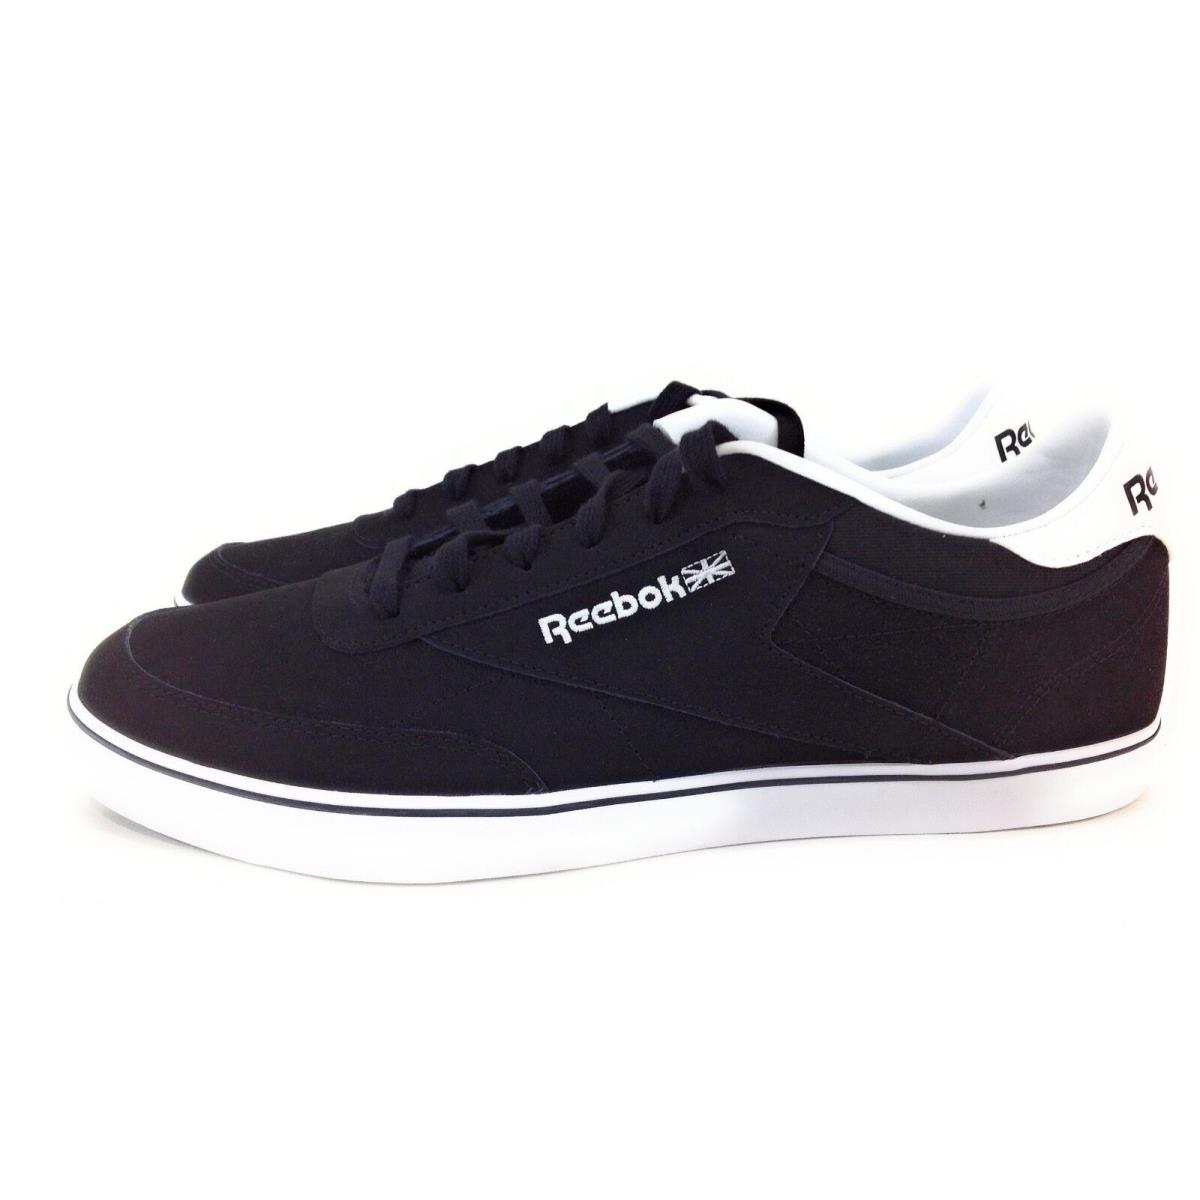 Reebok shoes Club - Black/White 1